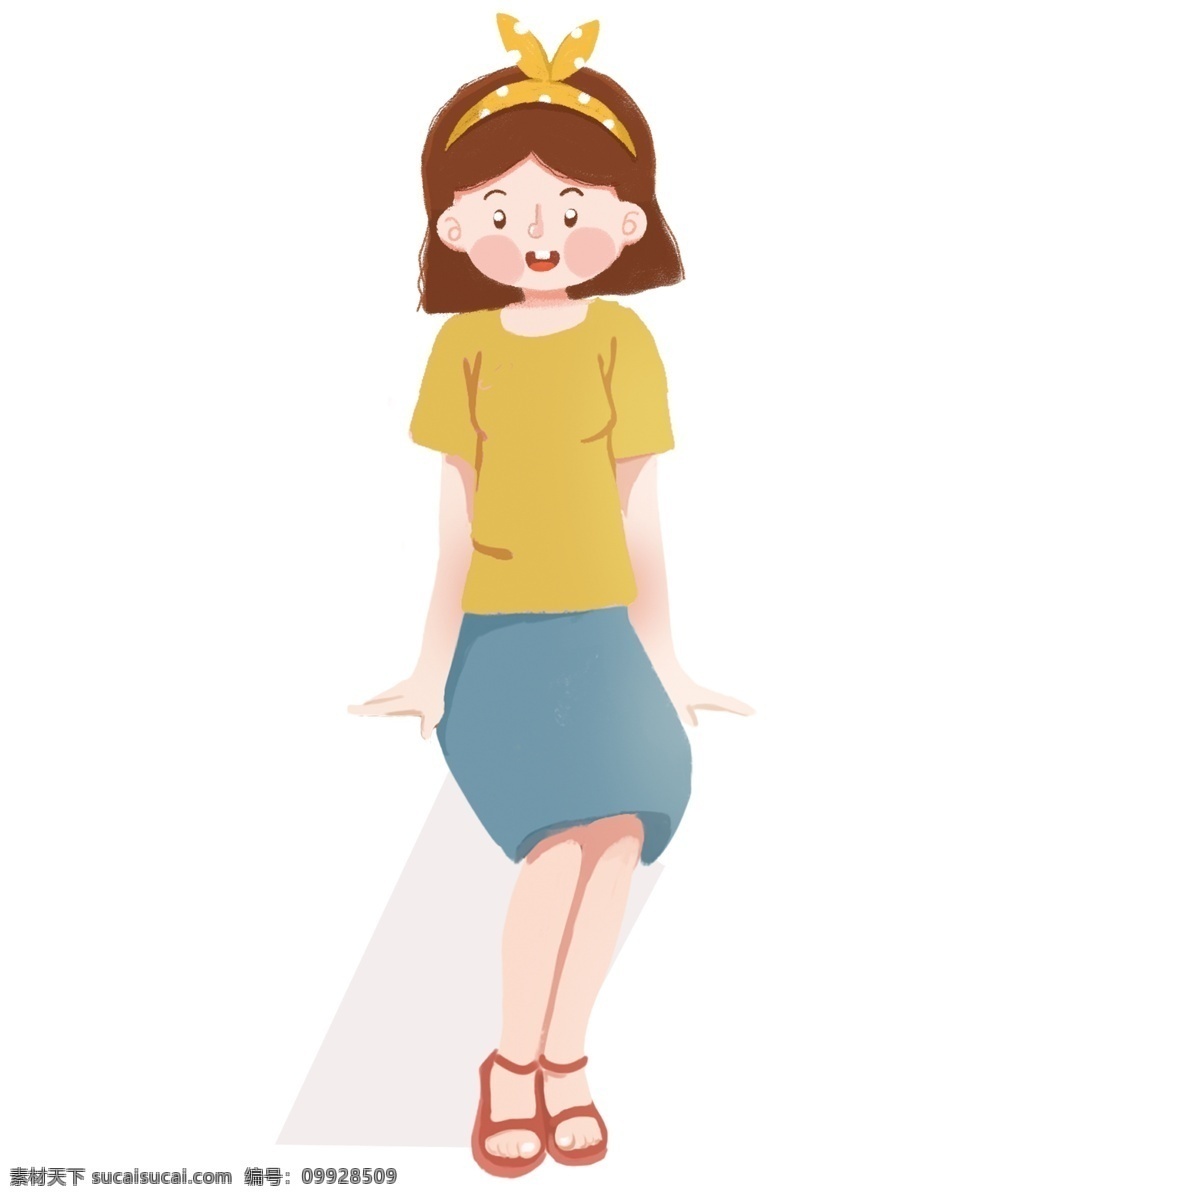 卡通 可爱 坐 小女孩 商用 元素 女孩 人物 微笑 开心 高兴 插画元素 q萌